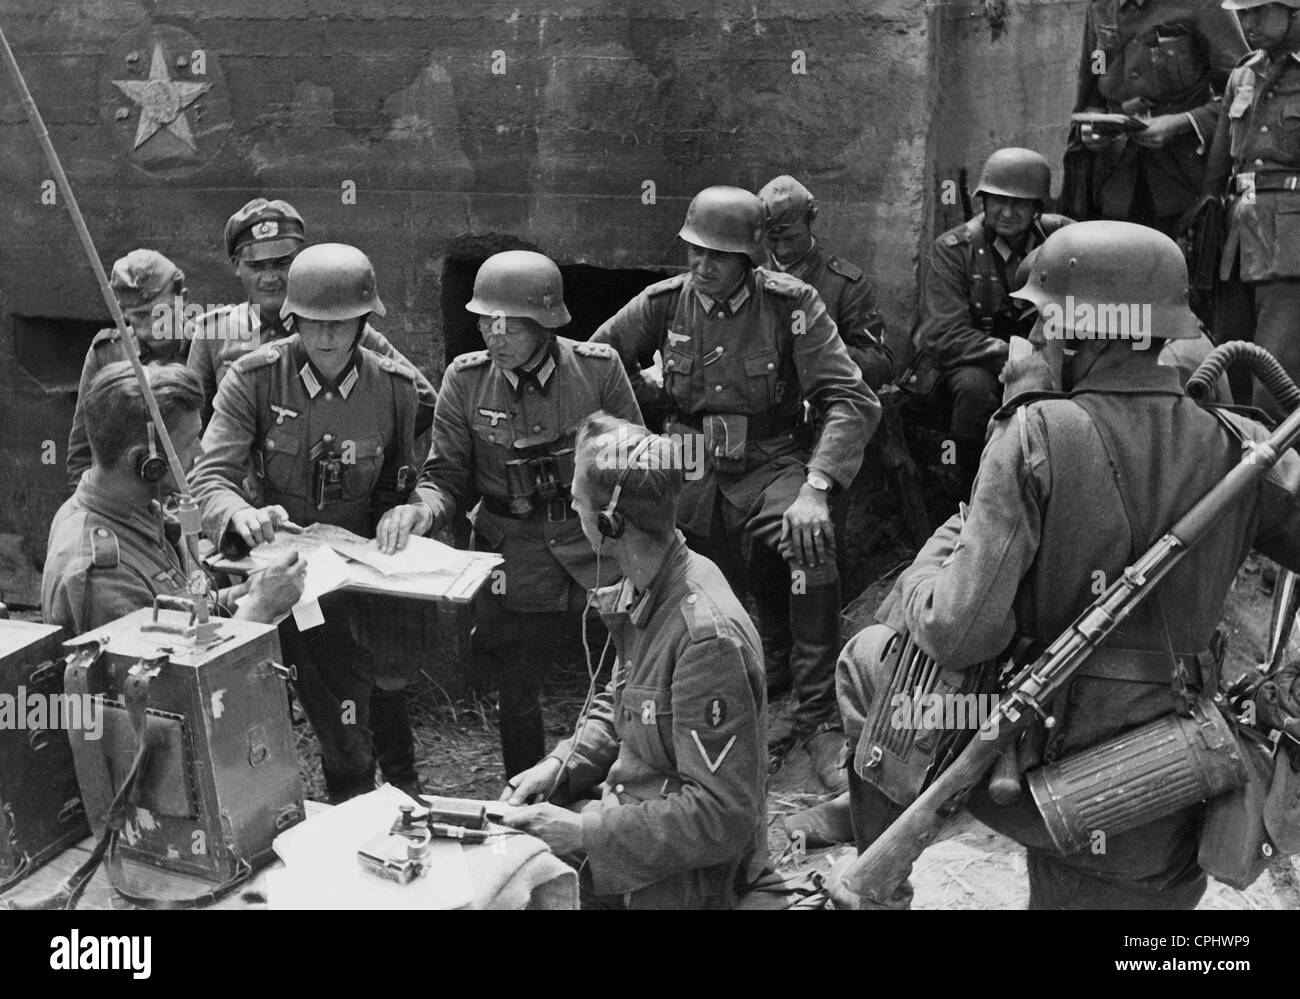 Gefechtsstand der deutschen Regiment an der Ostfront, 1941 Stockfotografie  - Alamy